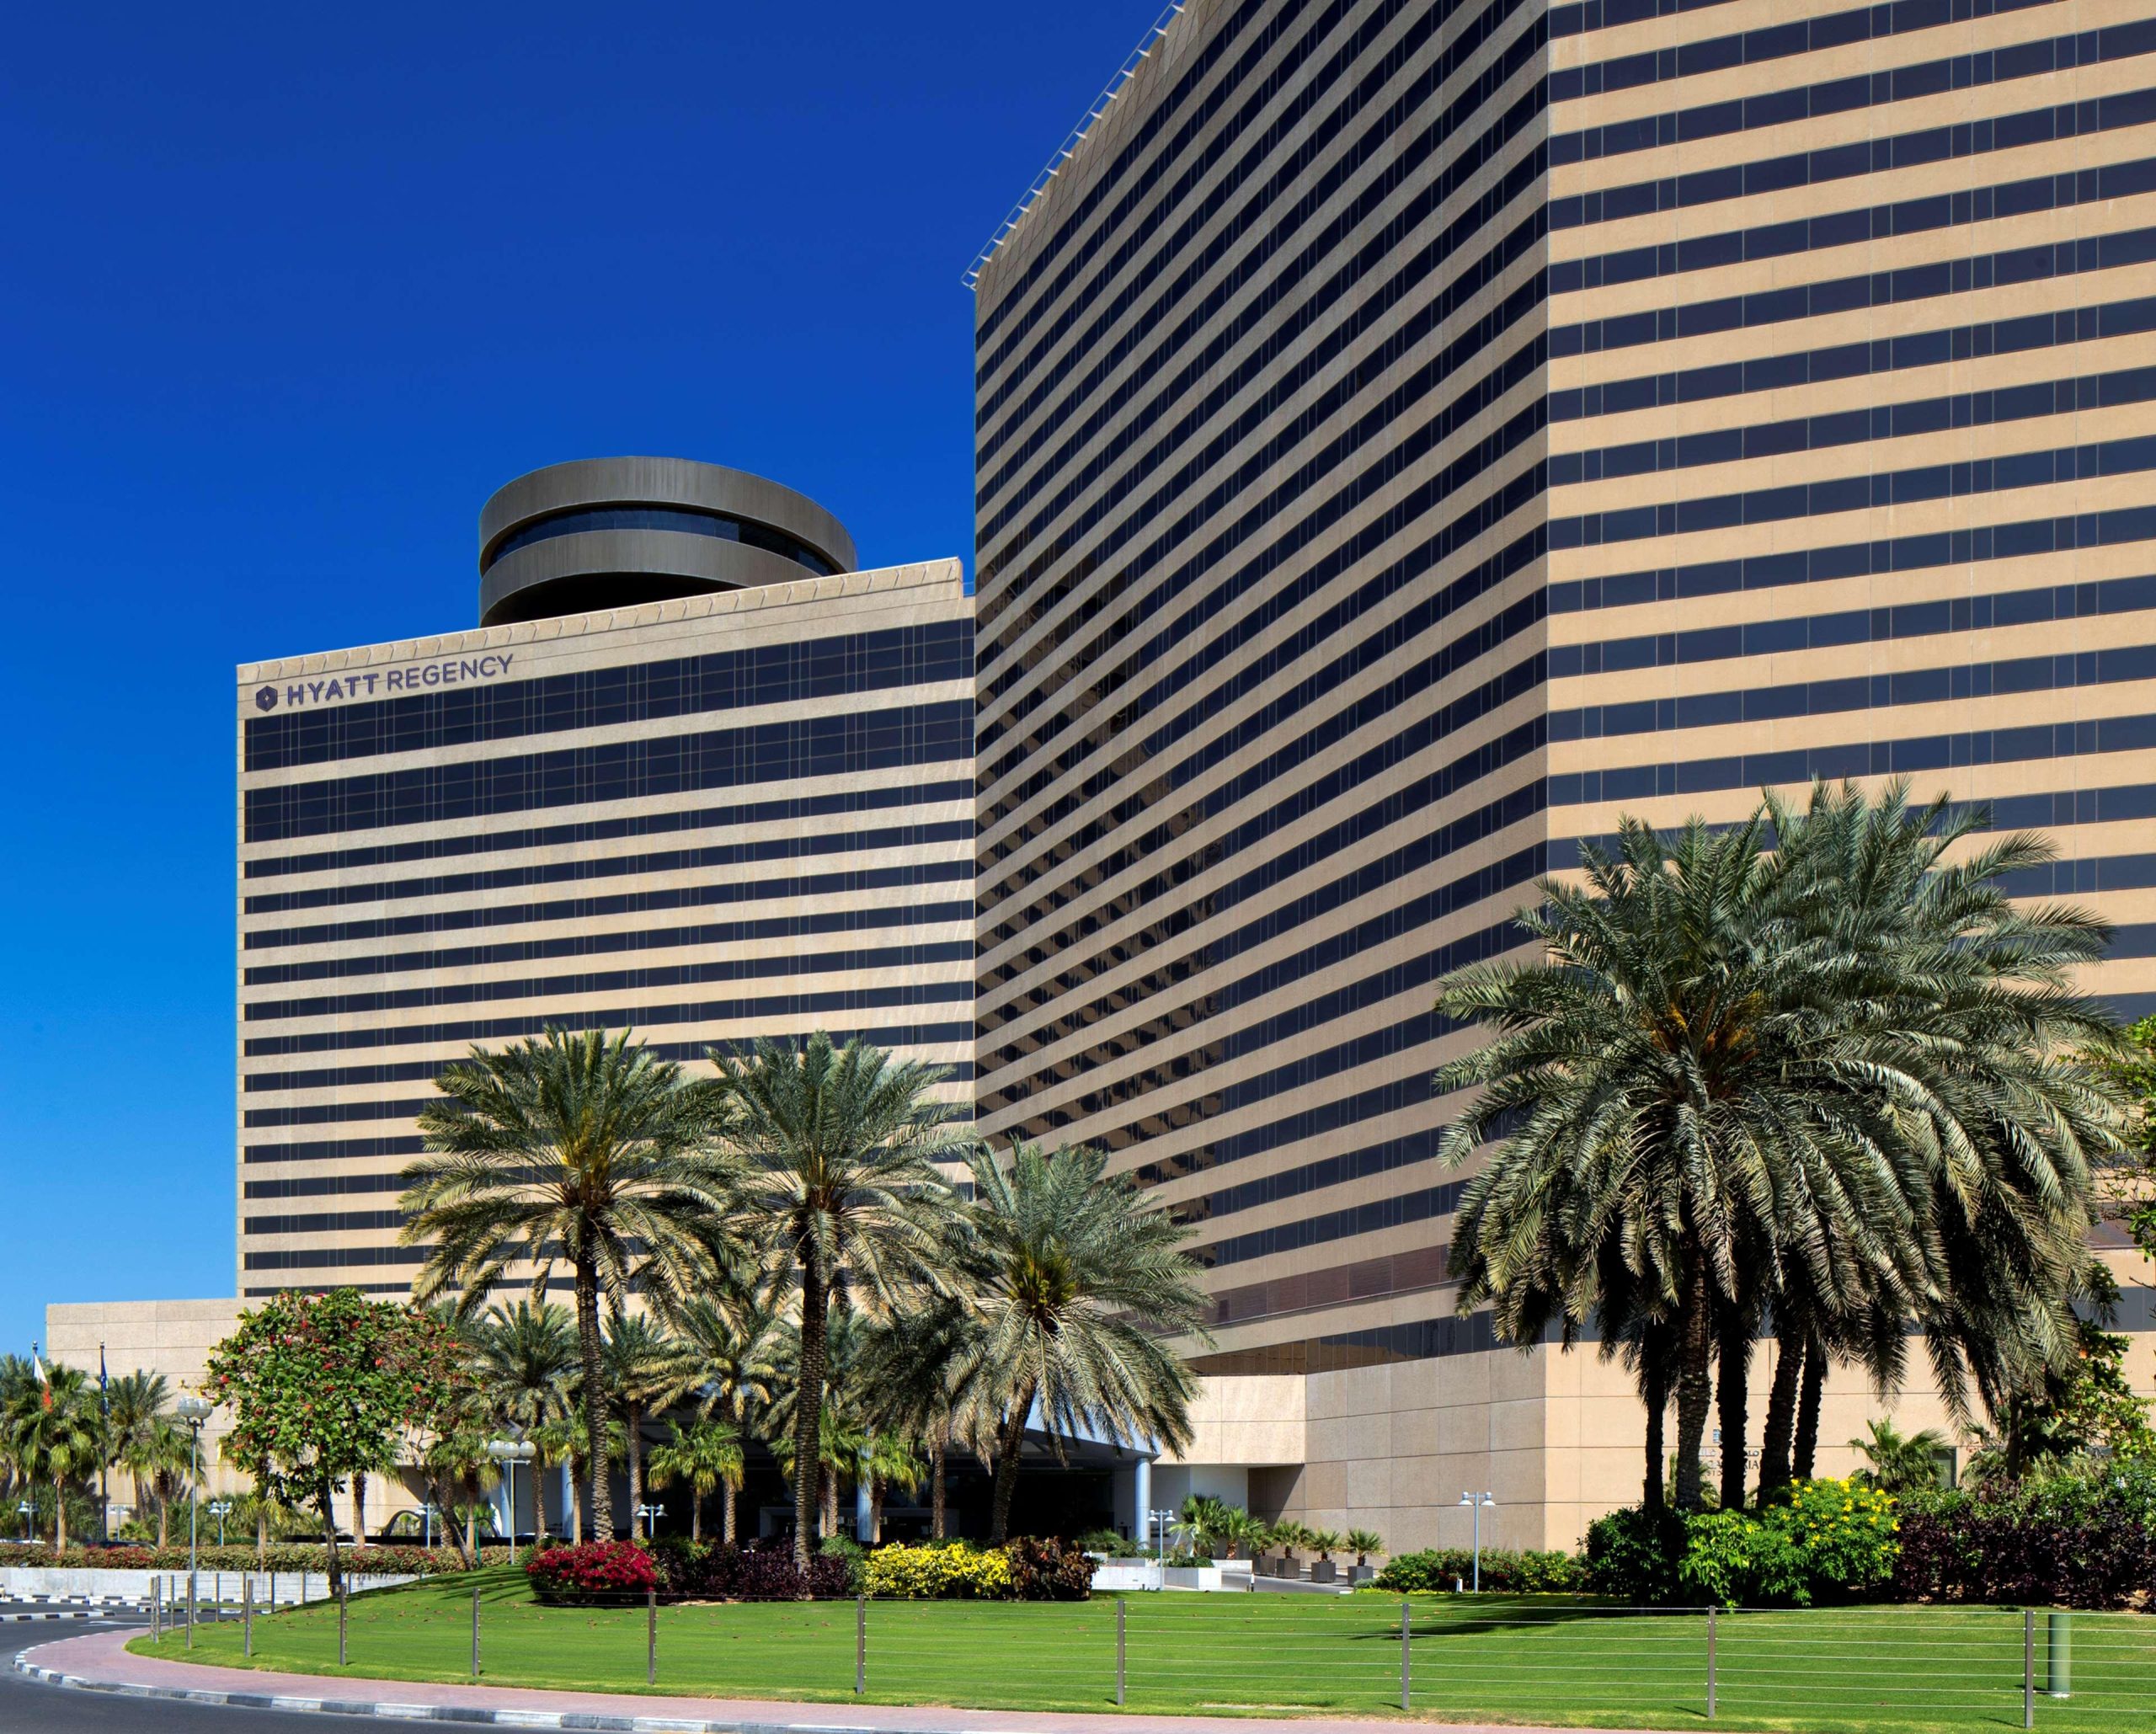 تور دبی هتل حیات رجنسی ویژه اردیبهشت